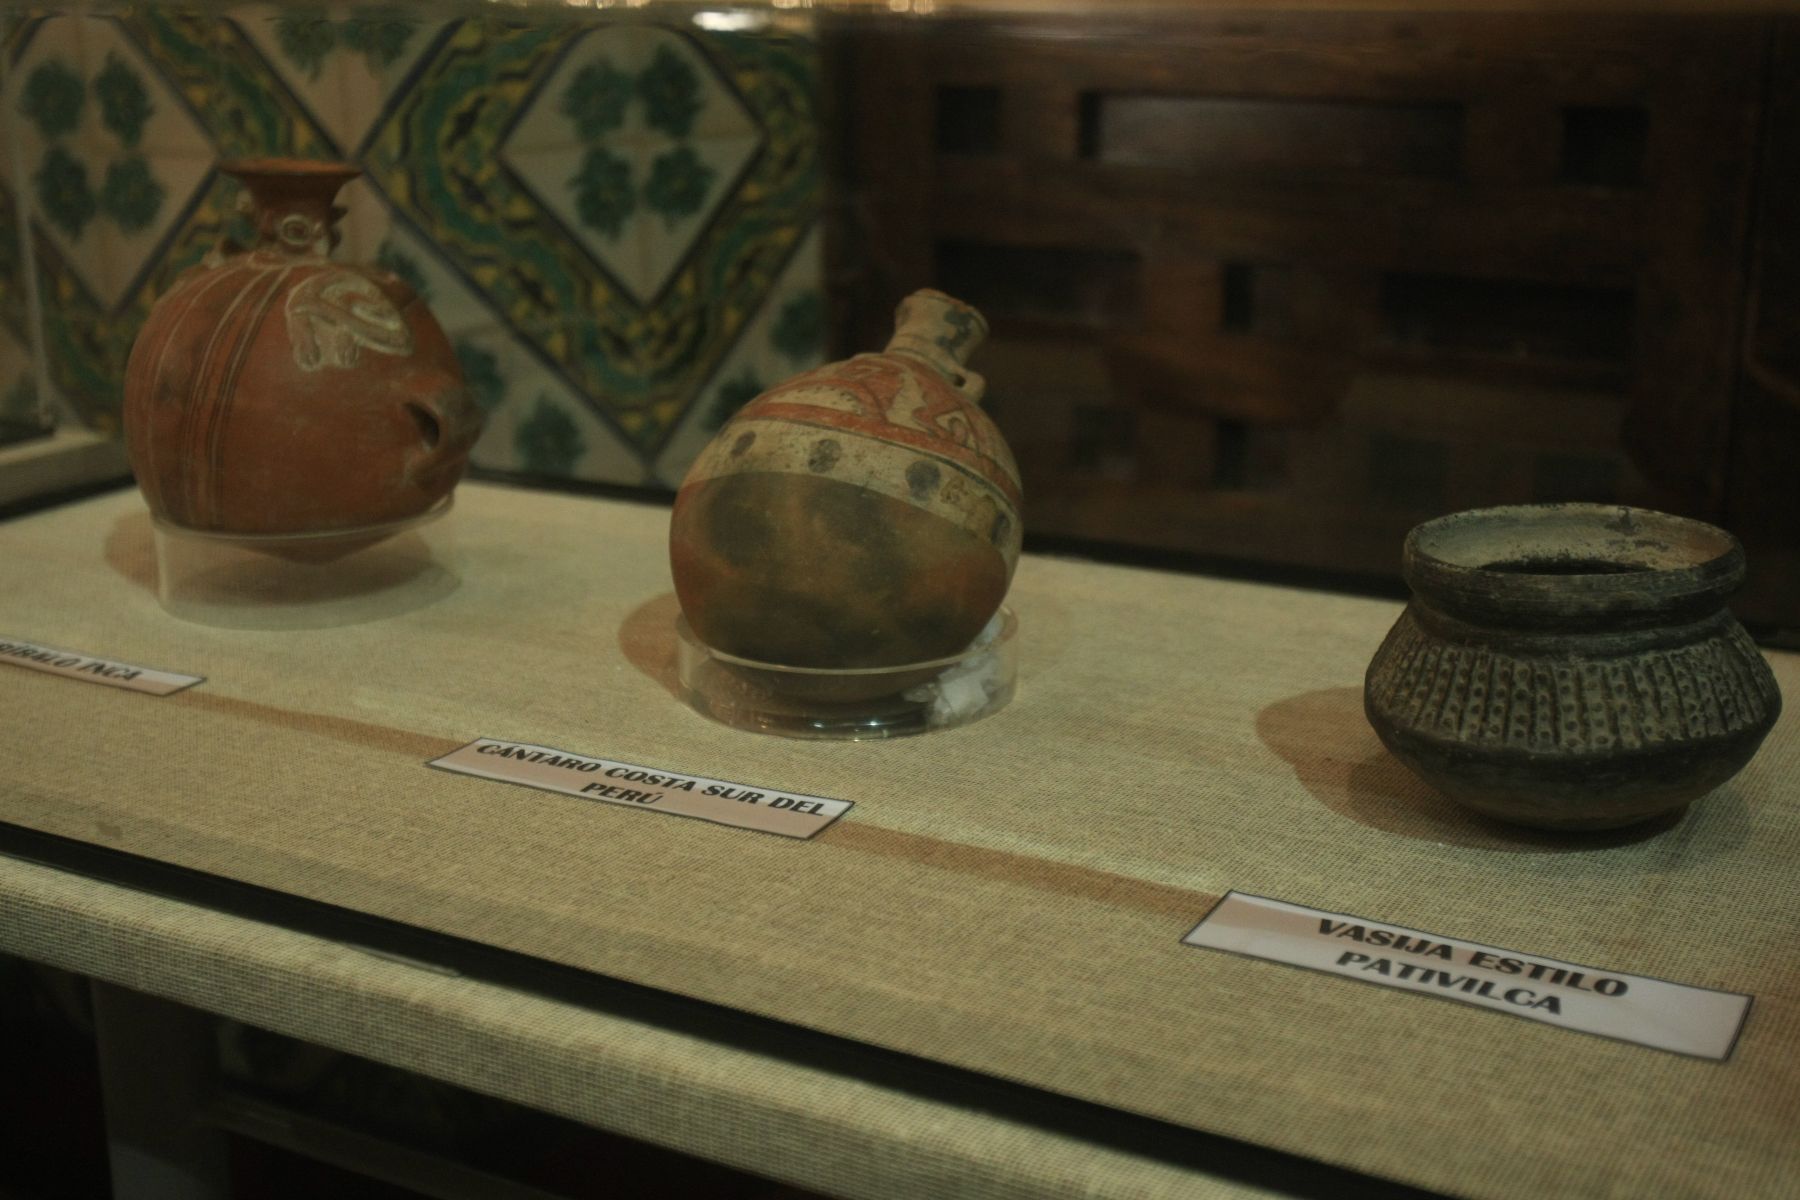 Piezas prehispánicas recuperadas por la Cancillería peruana son entregadas al Ministerio de Cultura.